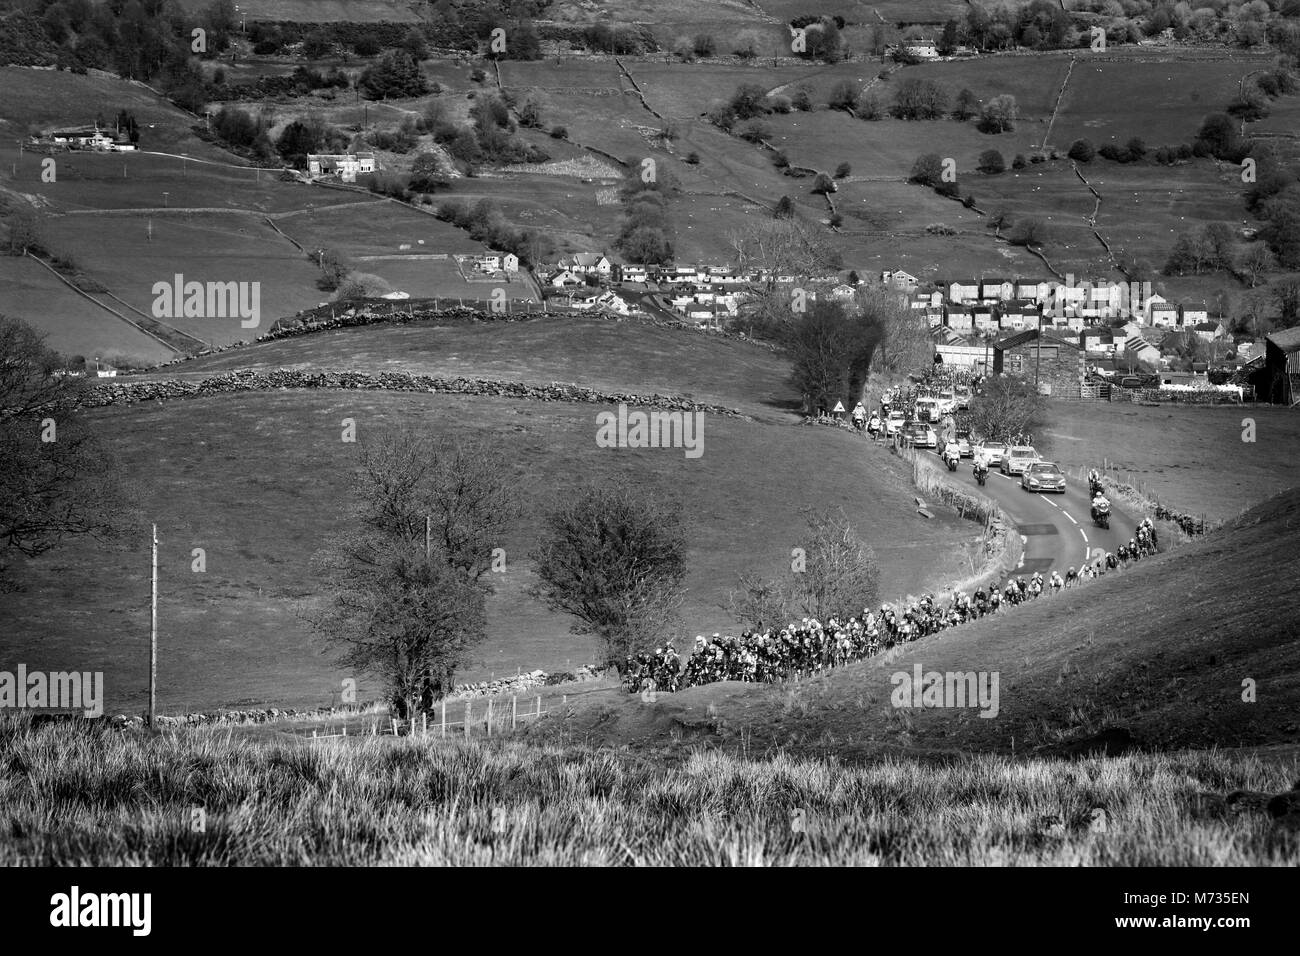 Tour de Yorkshire 2016 The Peloton climb Cote de Greenhow hill, stage 1 Tour de Yorkshire. Stock Photo